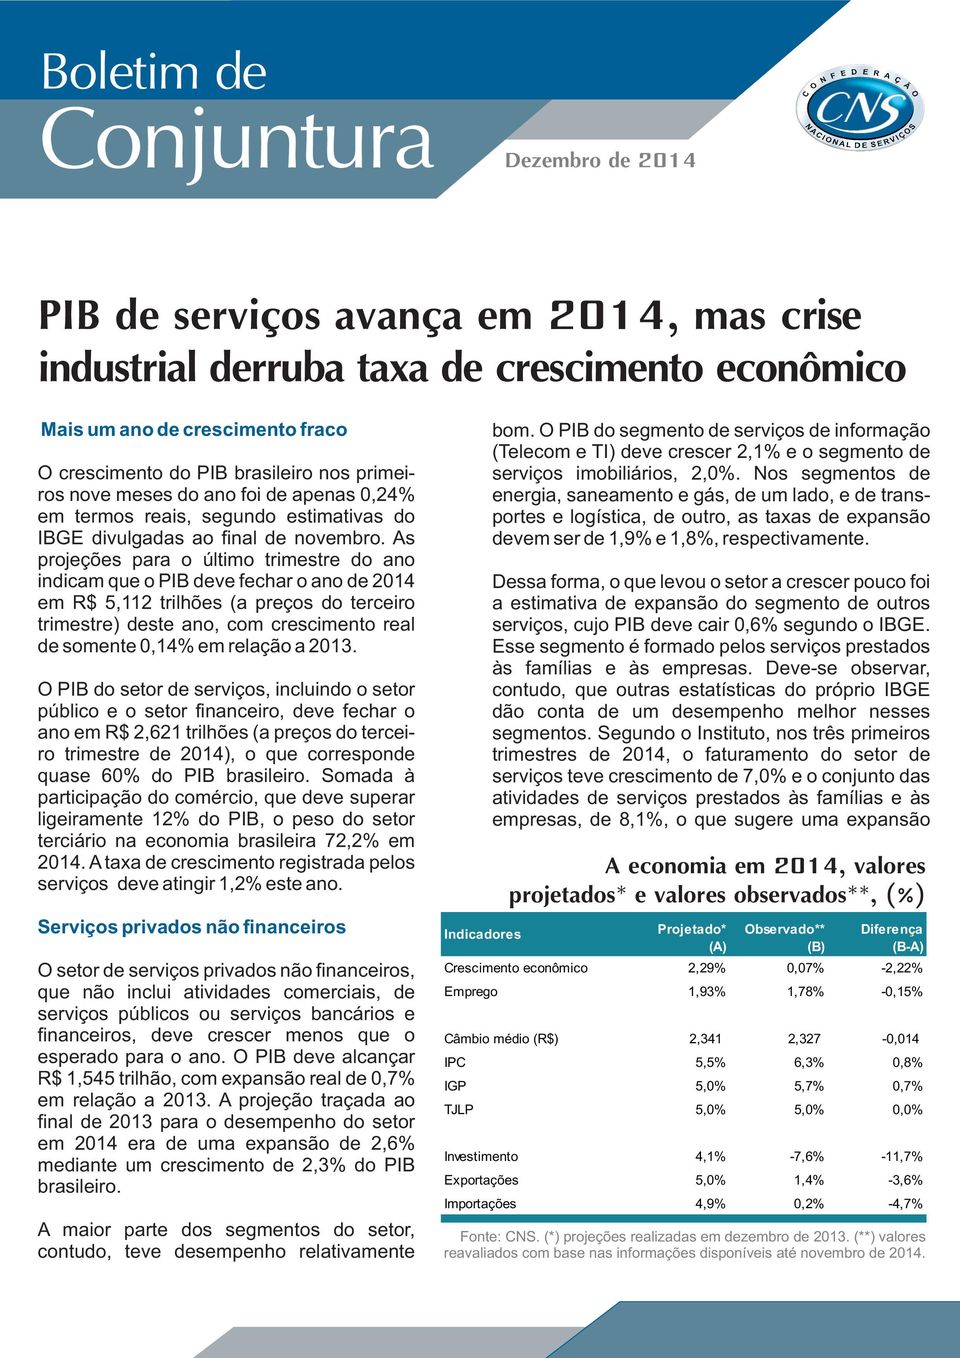 As projeções para o último trimestre do ano indicam que o PIB deve fechar o ano de 2014 em R$ 5,112 trilhões (a preços do terceiro trimestre) deste ano, com crescimento real de somente 0,14% em